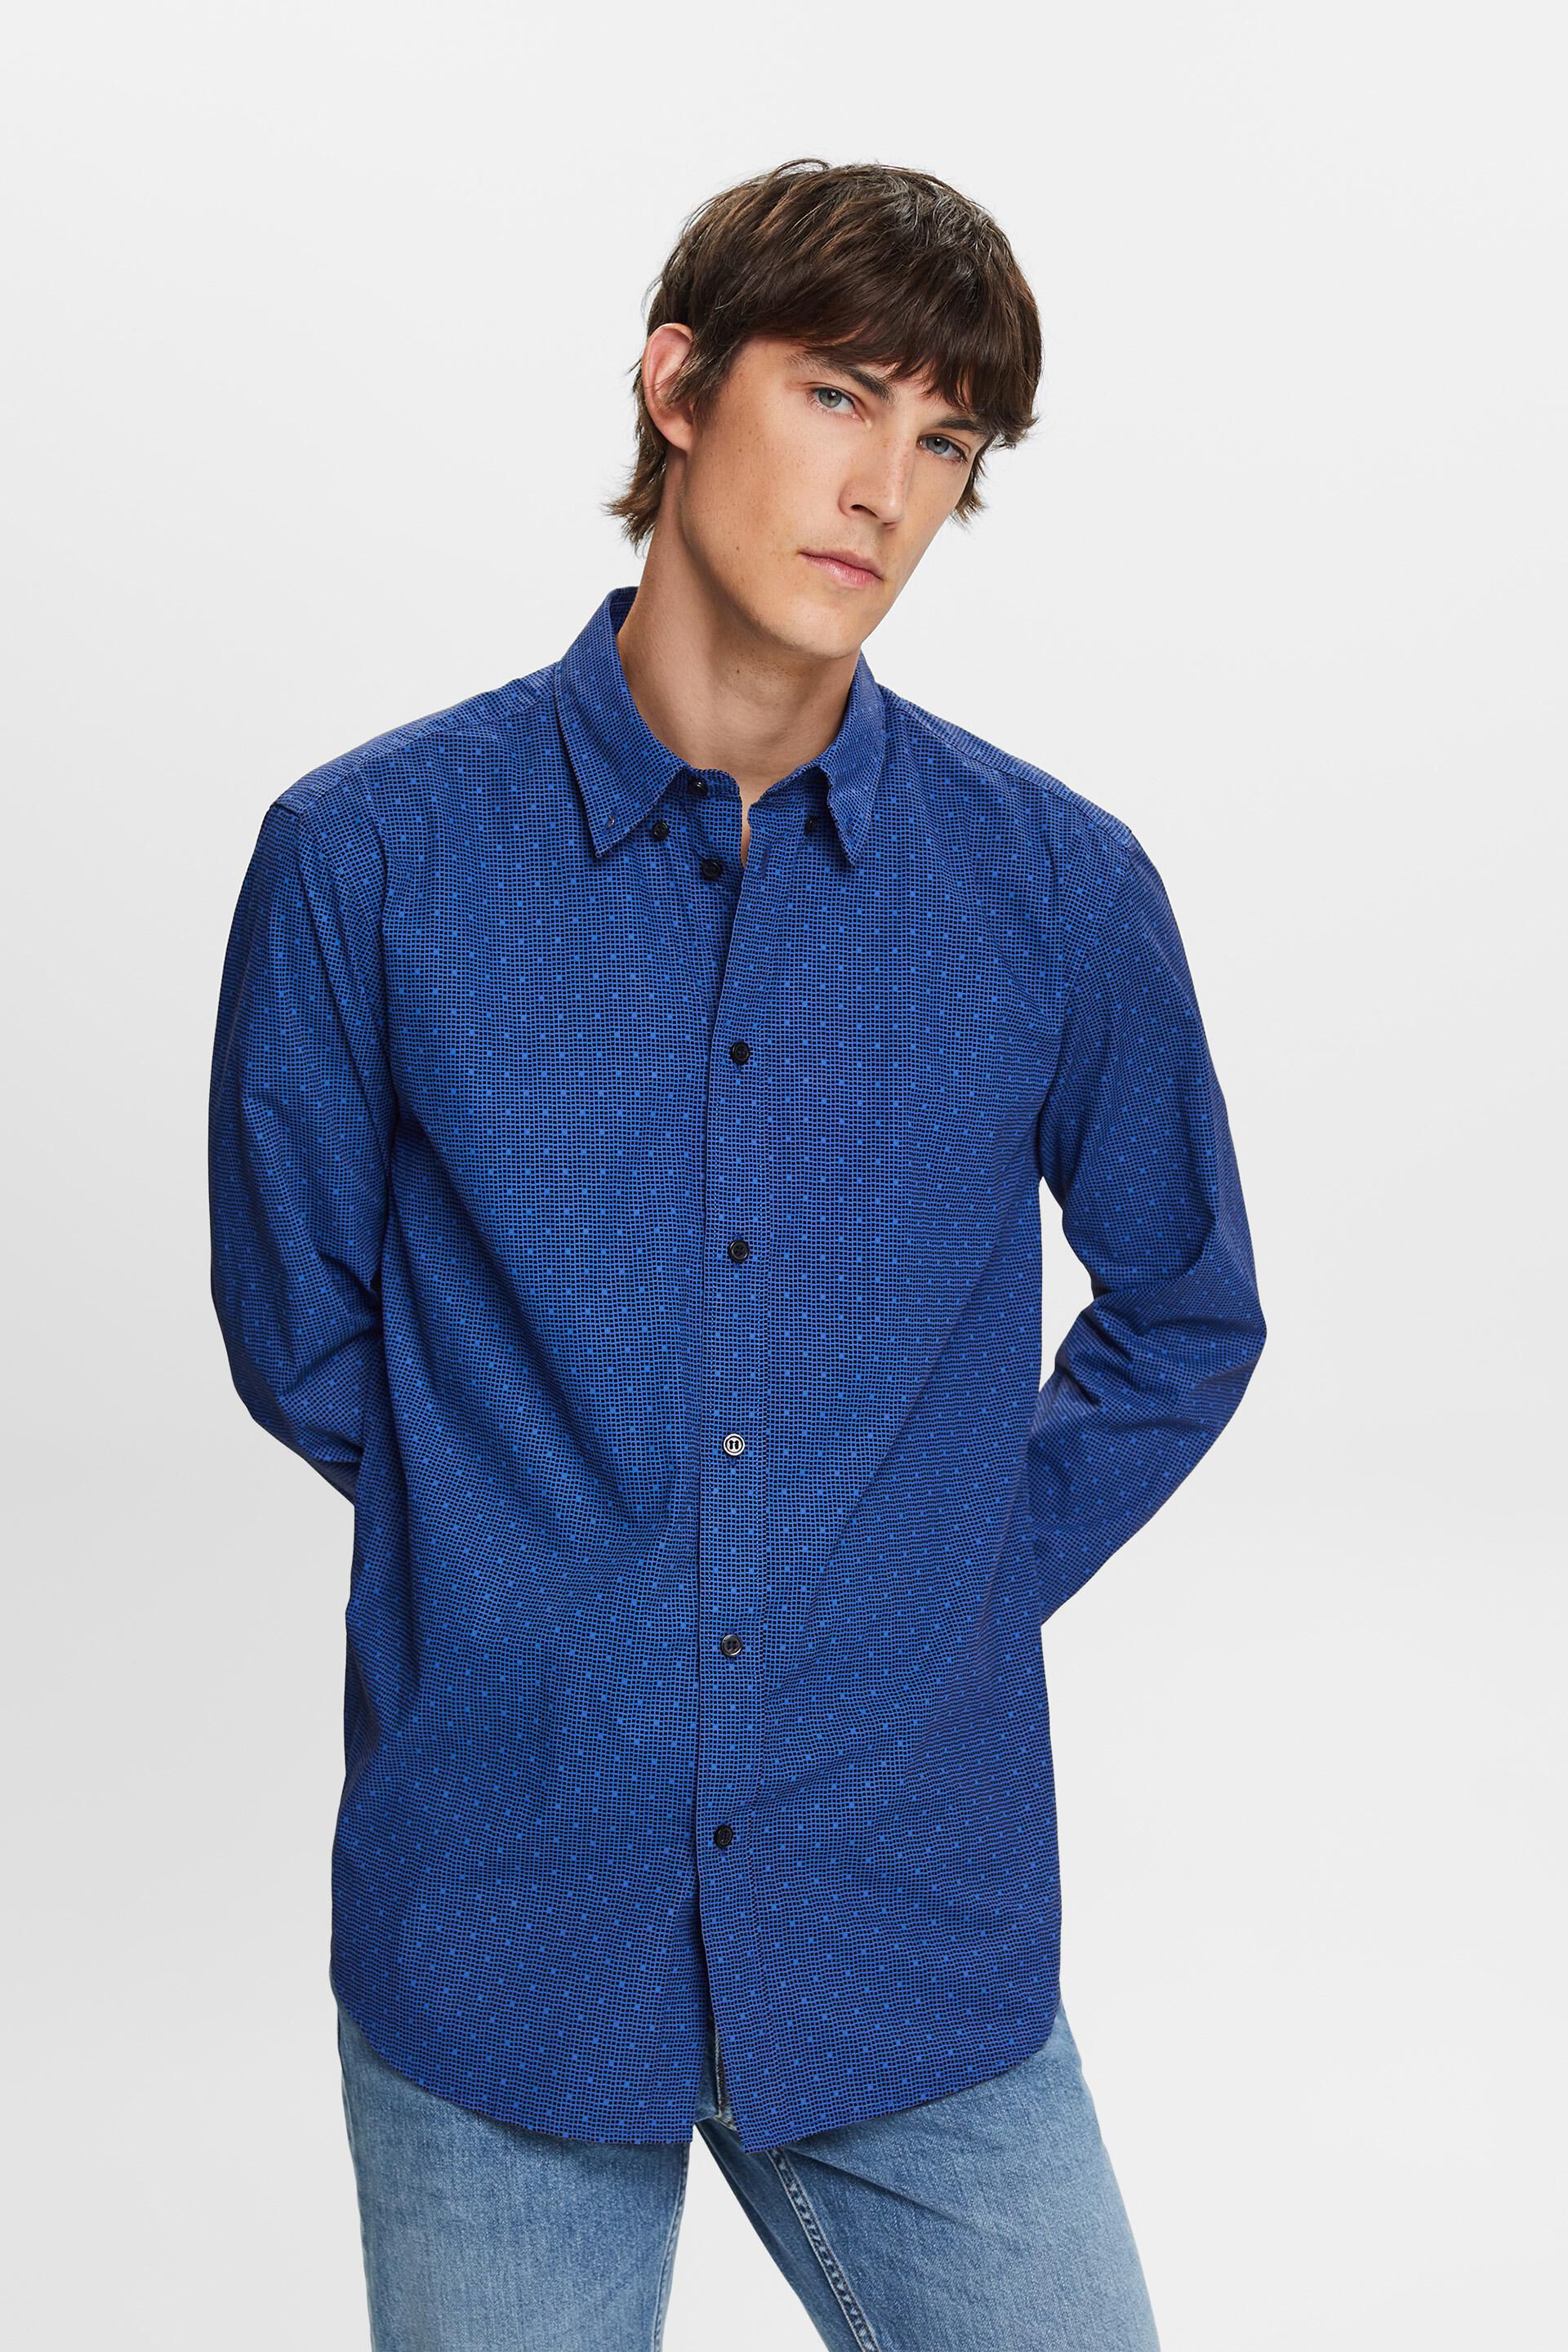 Esprit cotton shirt, Patterned 100% button-down